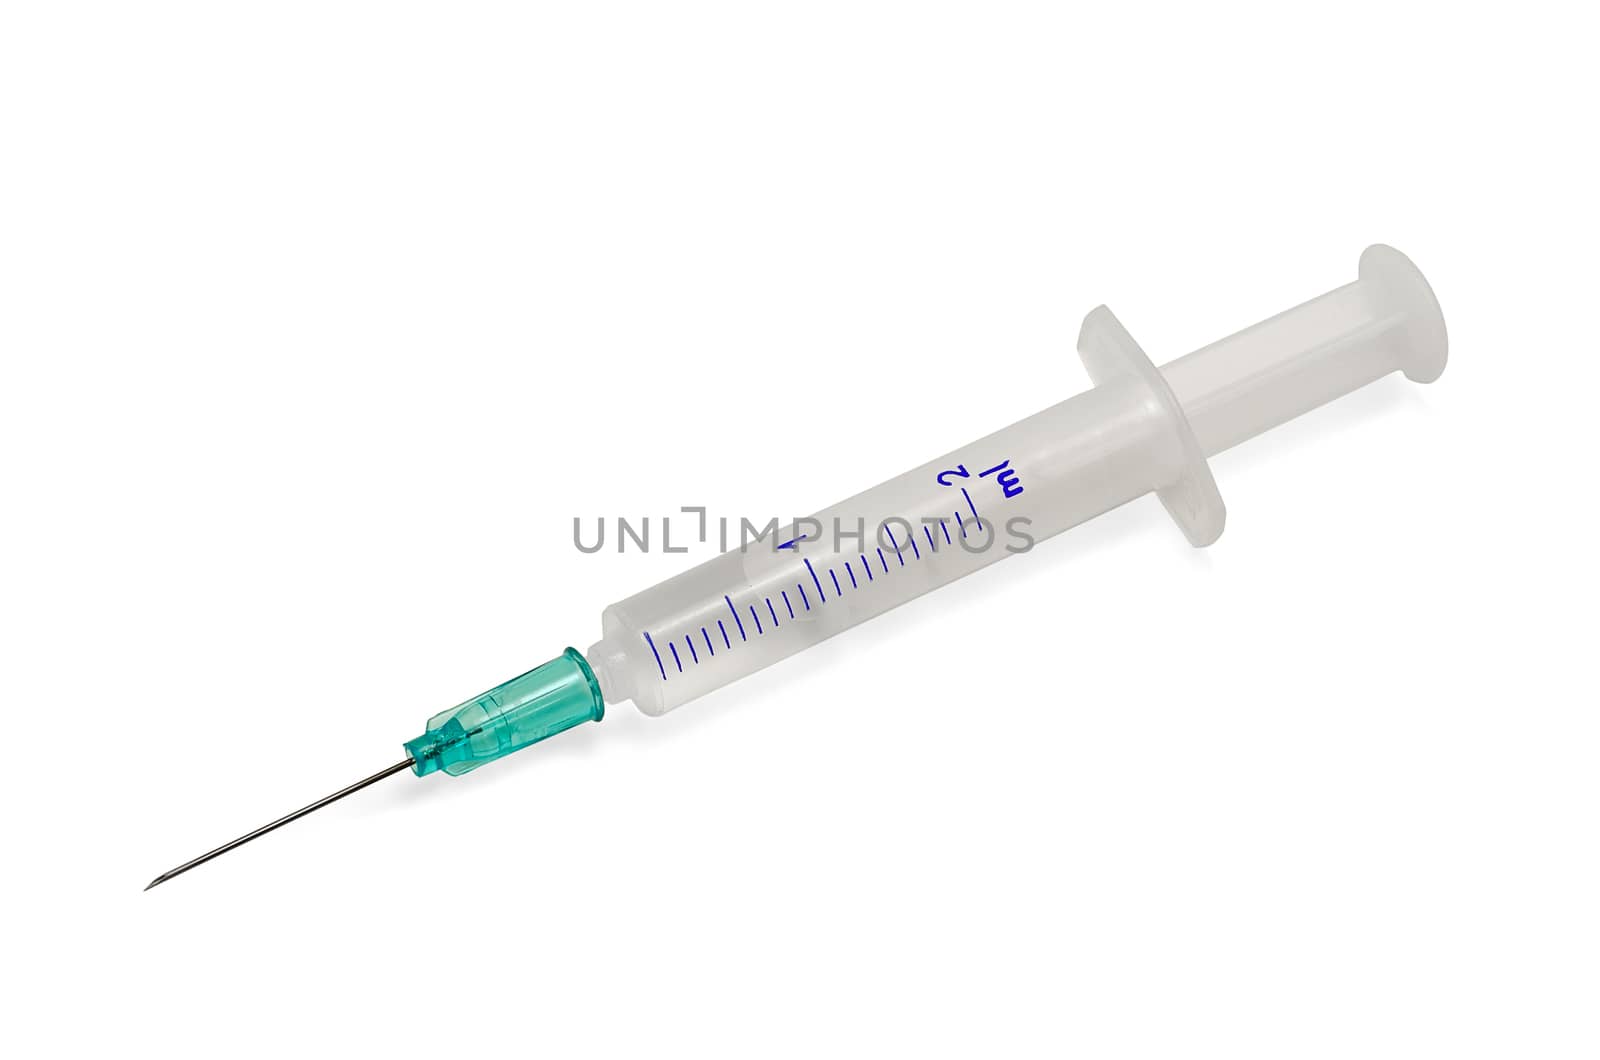 Plastic syringe with hypodermic needle isolated on white background.